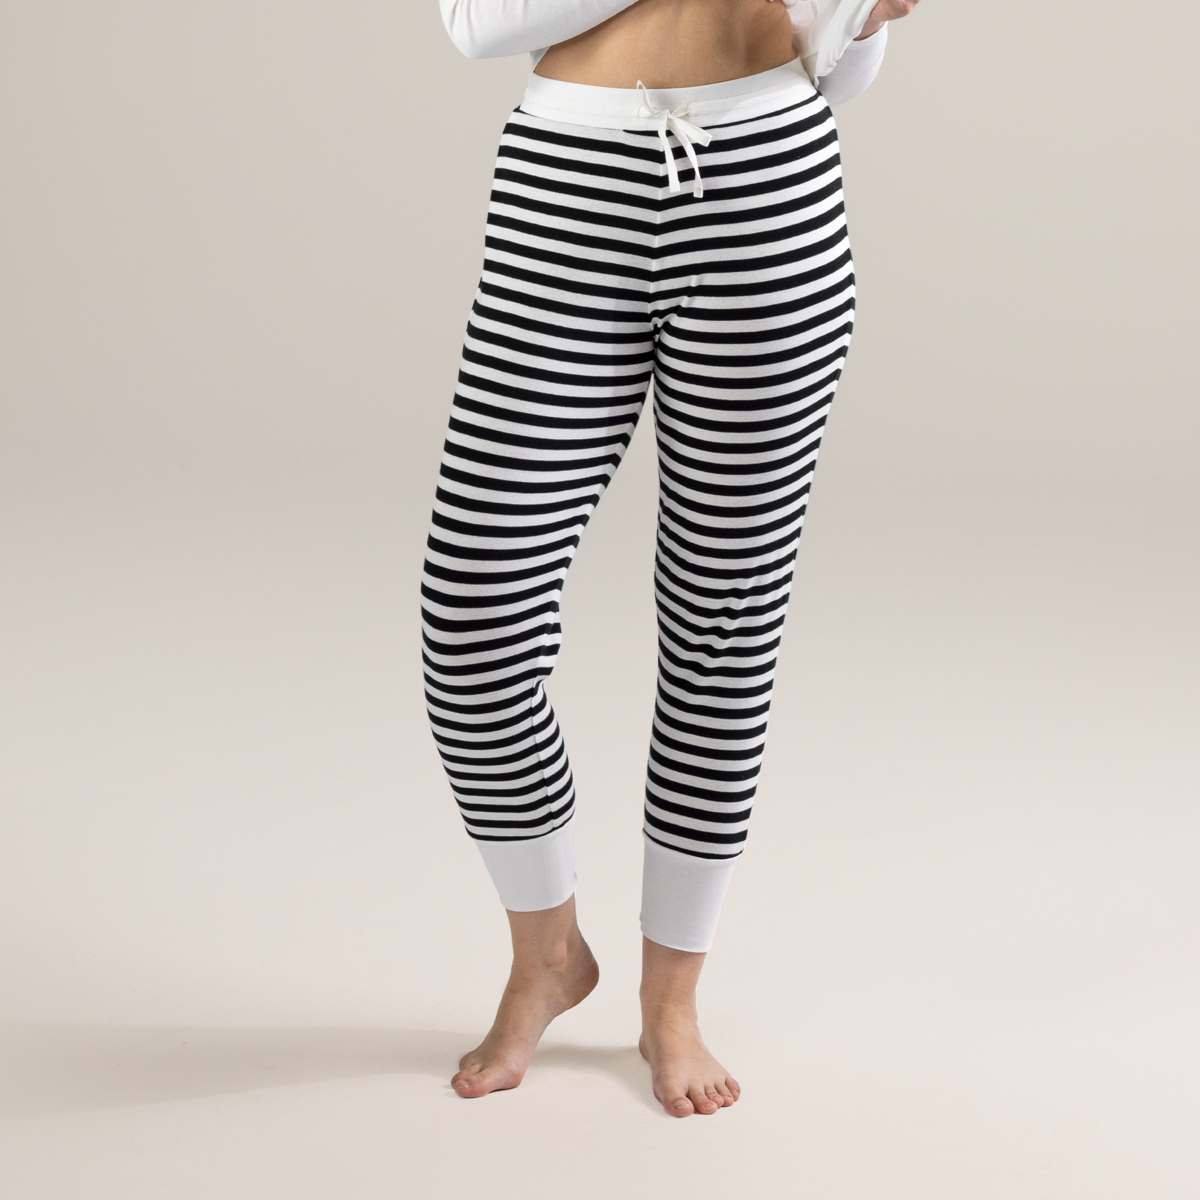 Striped Women Sleep trousers